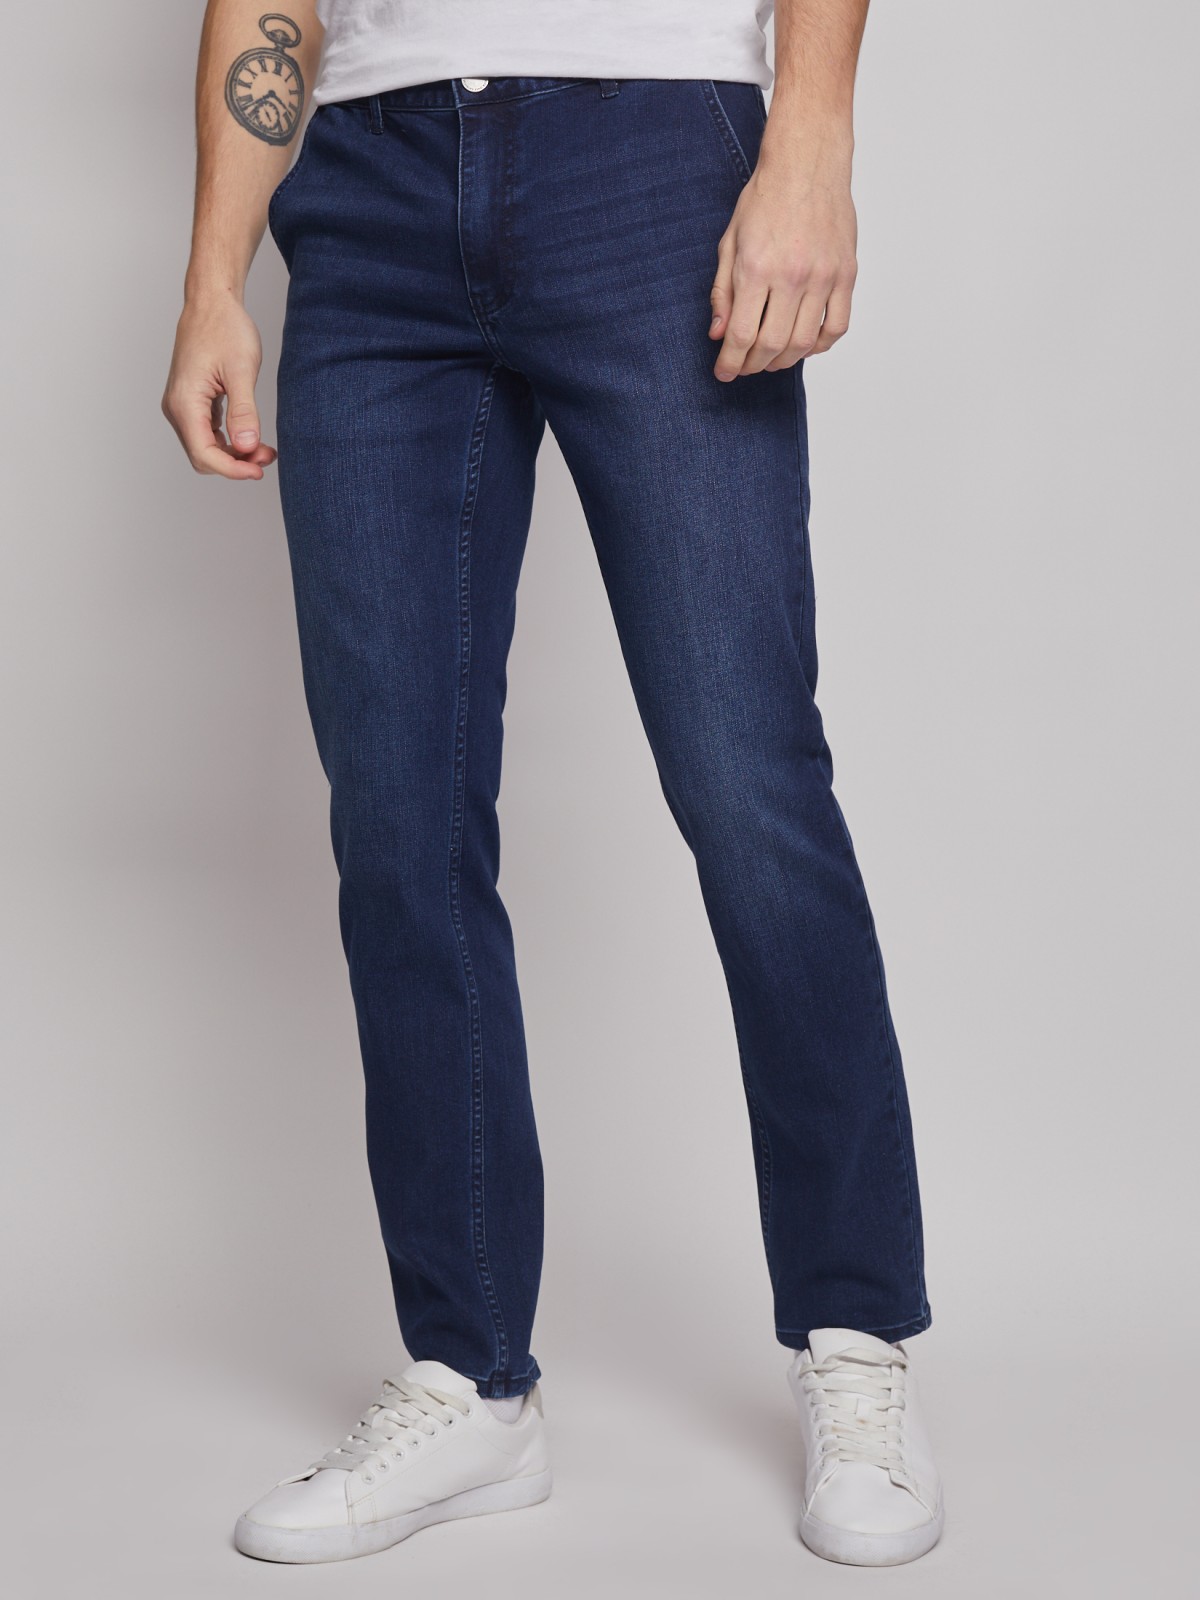 Брюки джинсовые zolla 01312711R061, цвет синий, размер 30 - фото 3